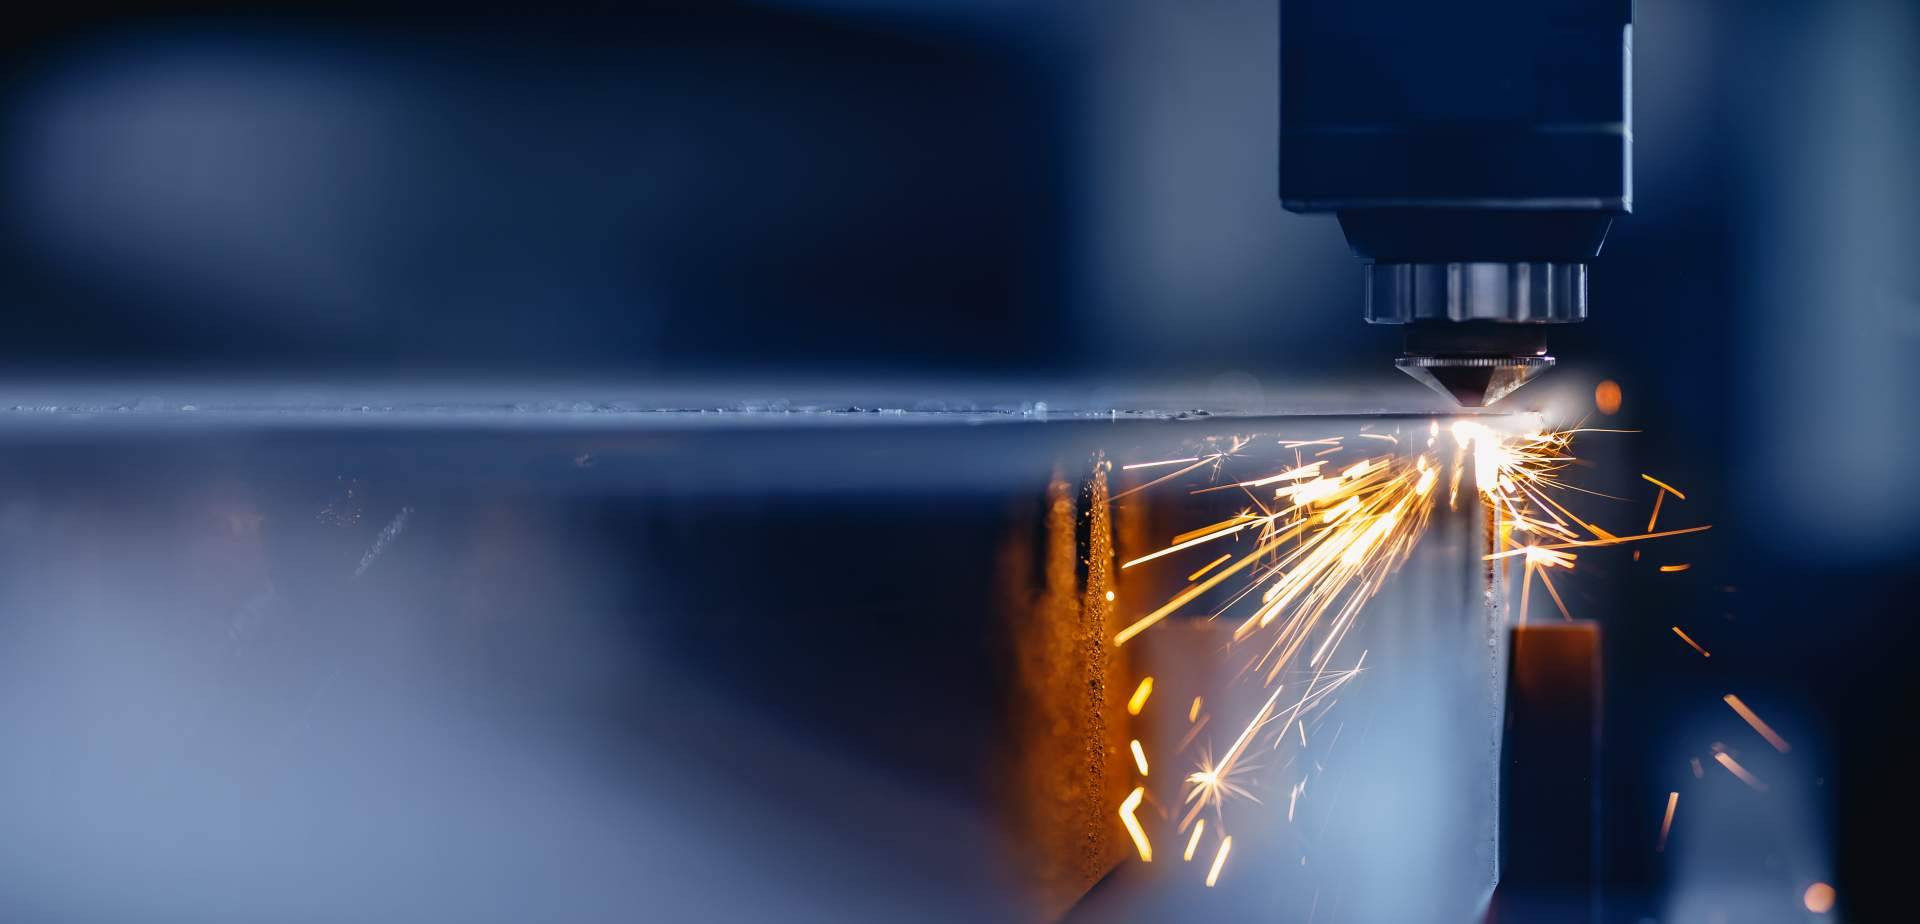  El corte láser ha revolucionado la industria metalúrgica 